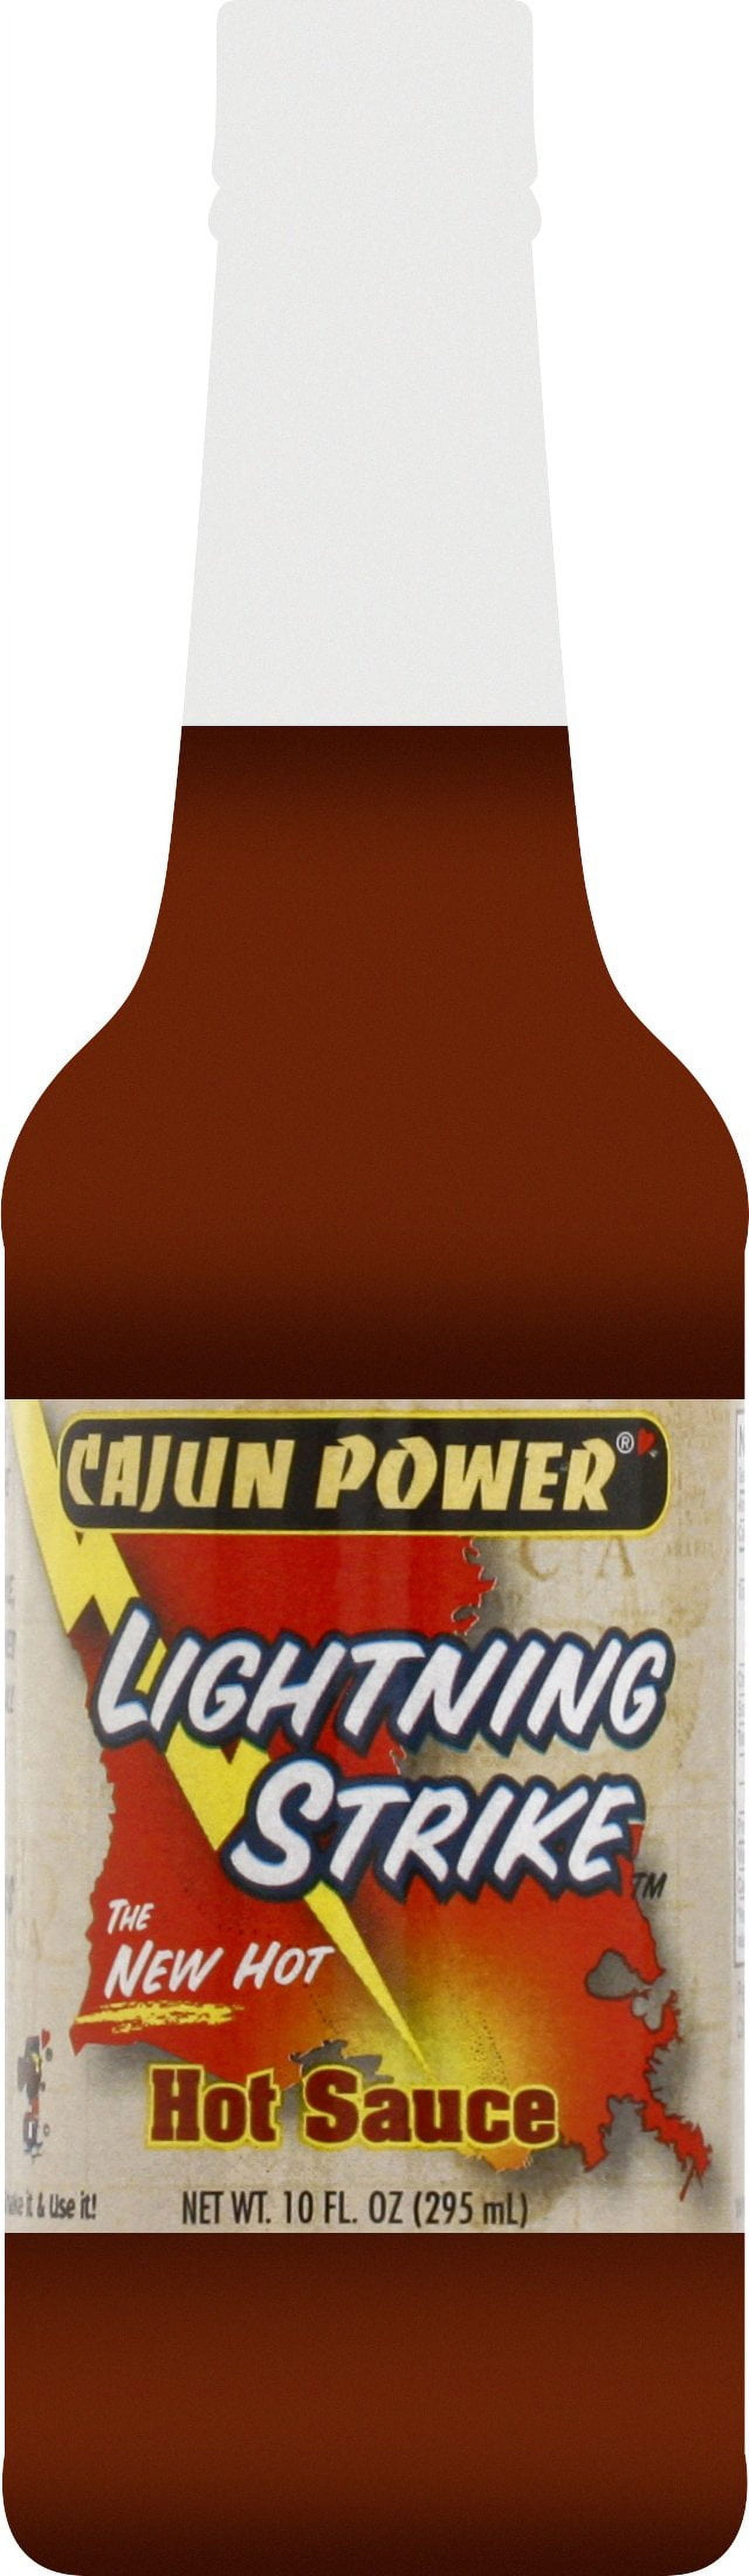 Cajun Power Lightning Hot Sauce 10oz 036921561580